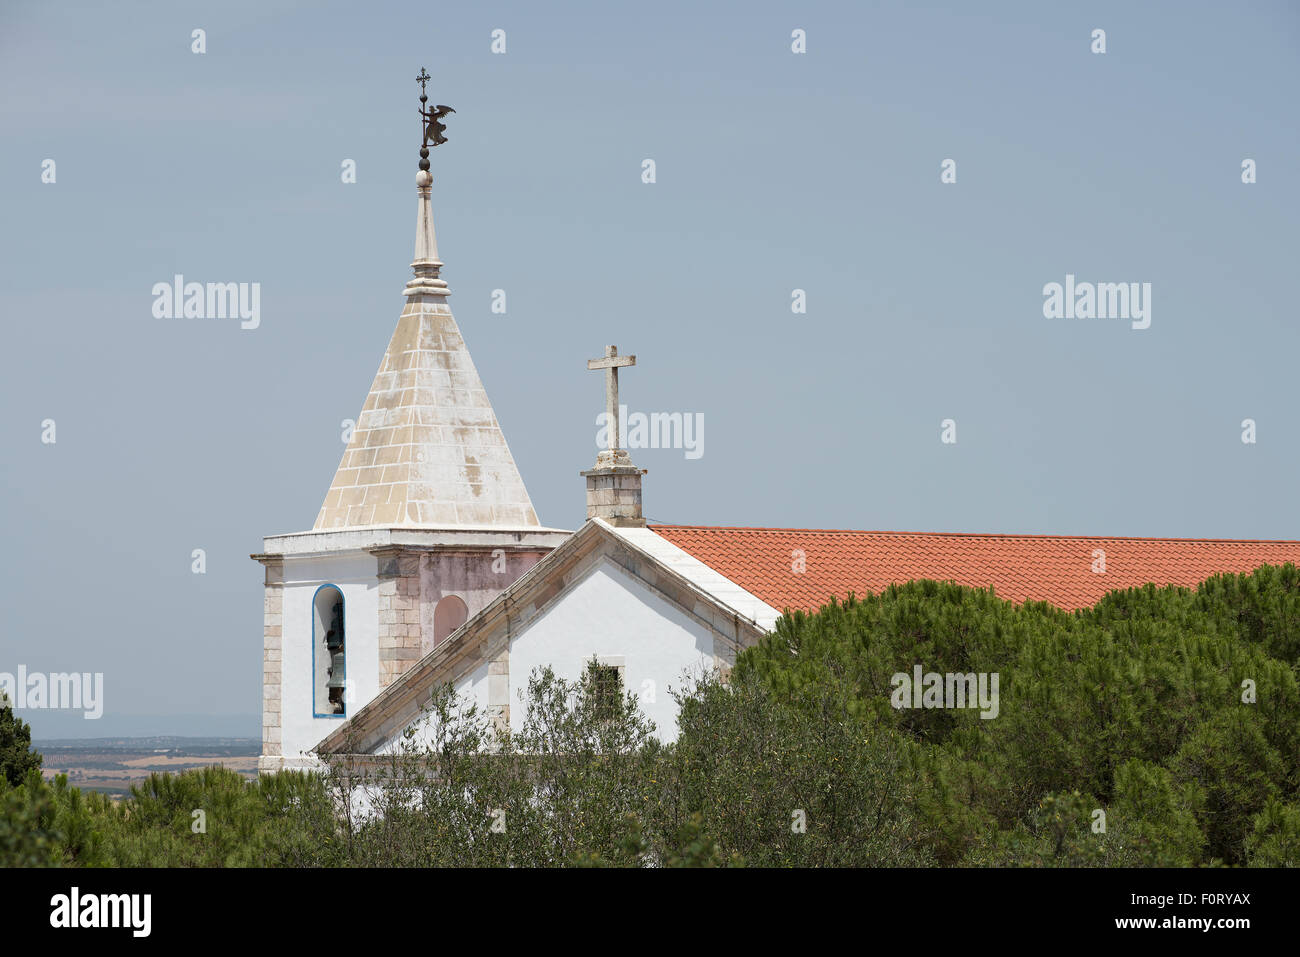 The steeple of the Church of Nossa Senhora da Conceição. Stock Photo